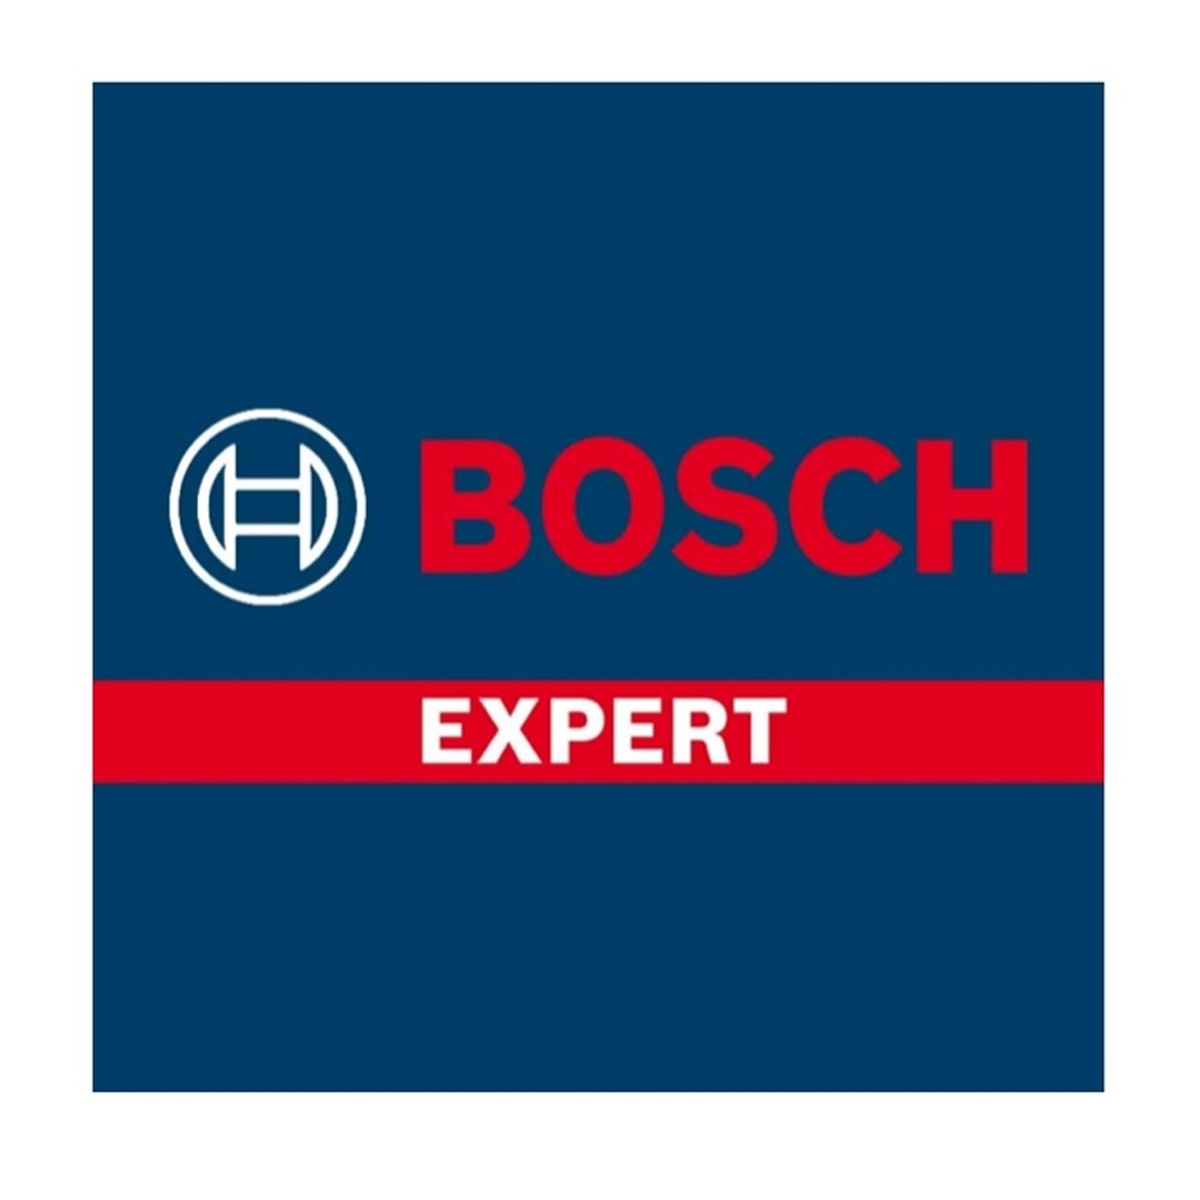 BOSCH PROFESSIONAL EXPERT Lochsäge, Bosch Blue Construction